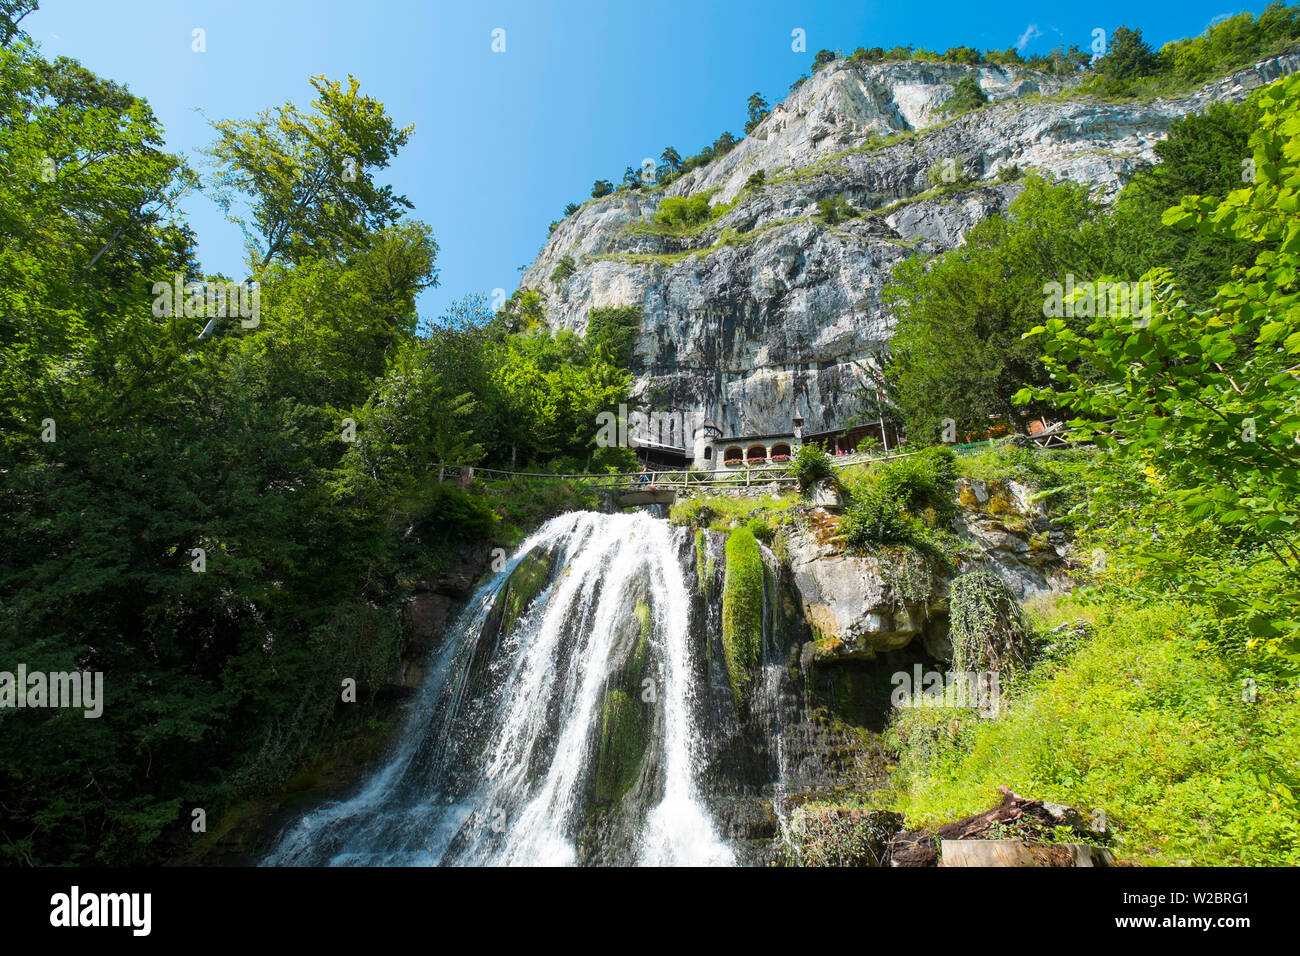 Grottes de Saint-béat, lac de Thoune, Berner Oberland, Suisse Banque D'Images